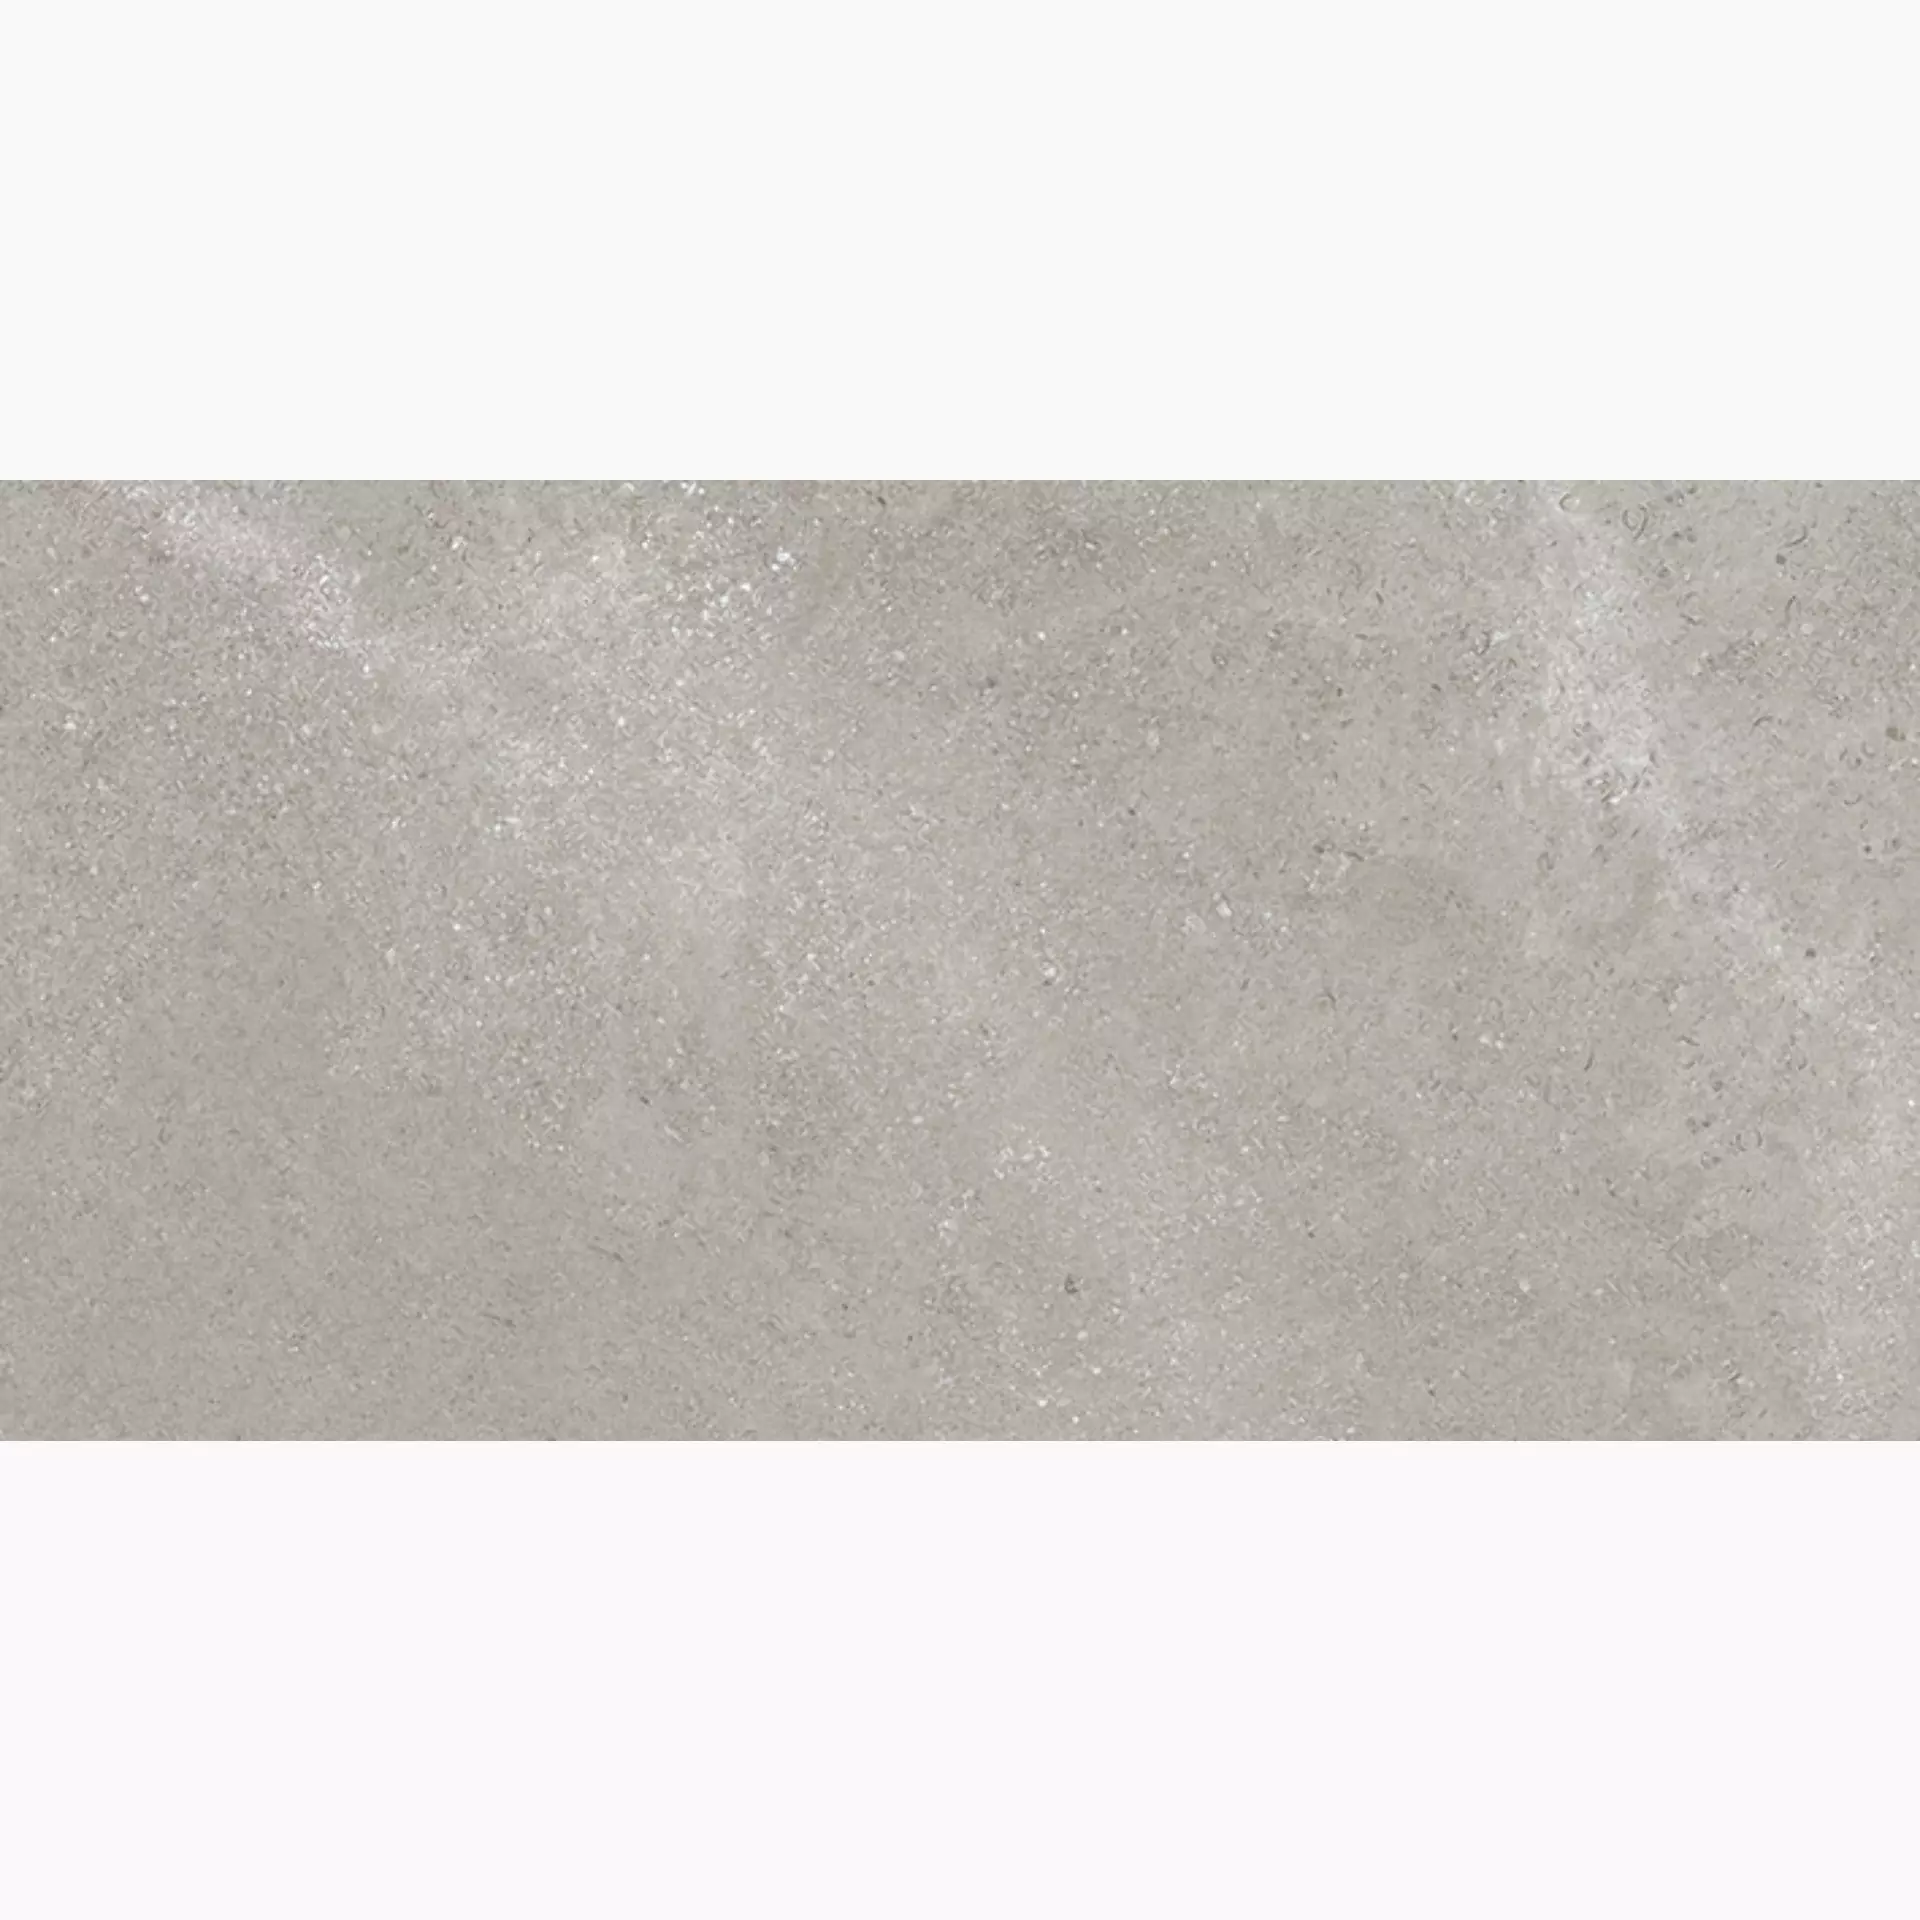 Wandfliese,Bodenfliese Villeroy & Boch Hudson Ash Grey Rough – Polished Ash Grey 2576-SD5L geschliffen 30x60cm rektifiziert 10mm